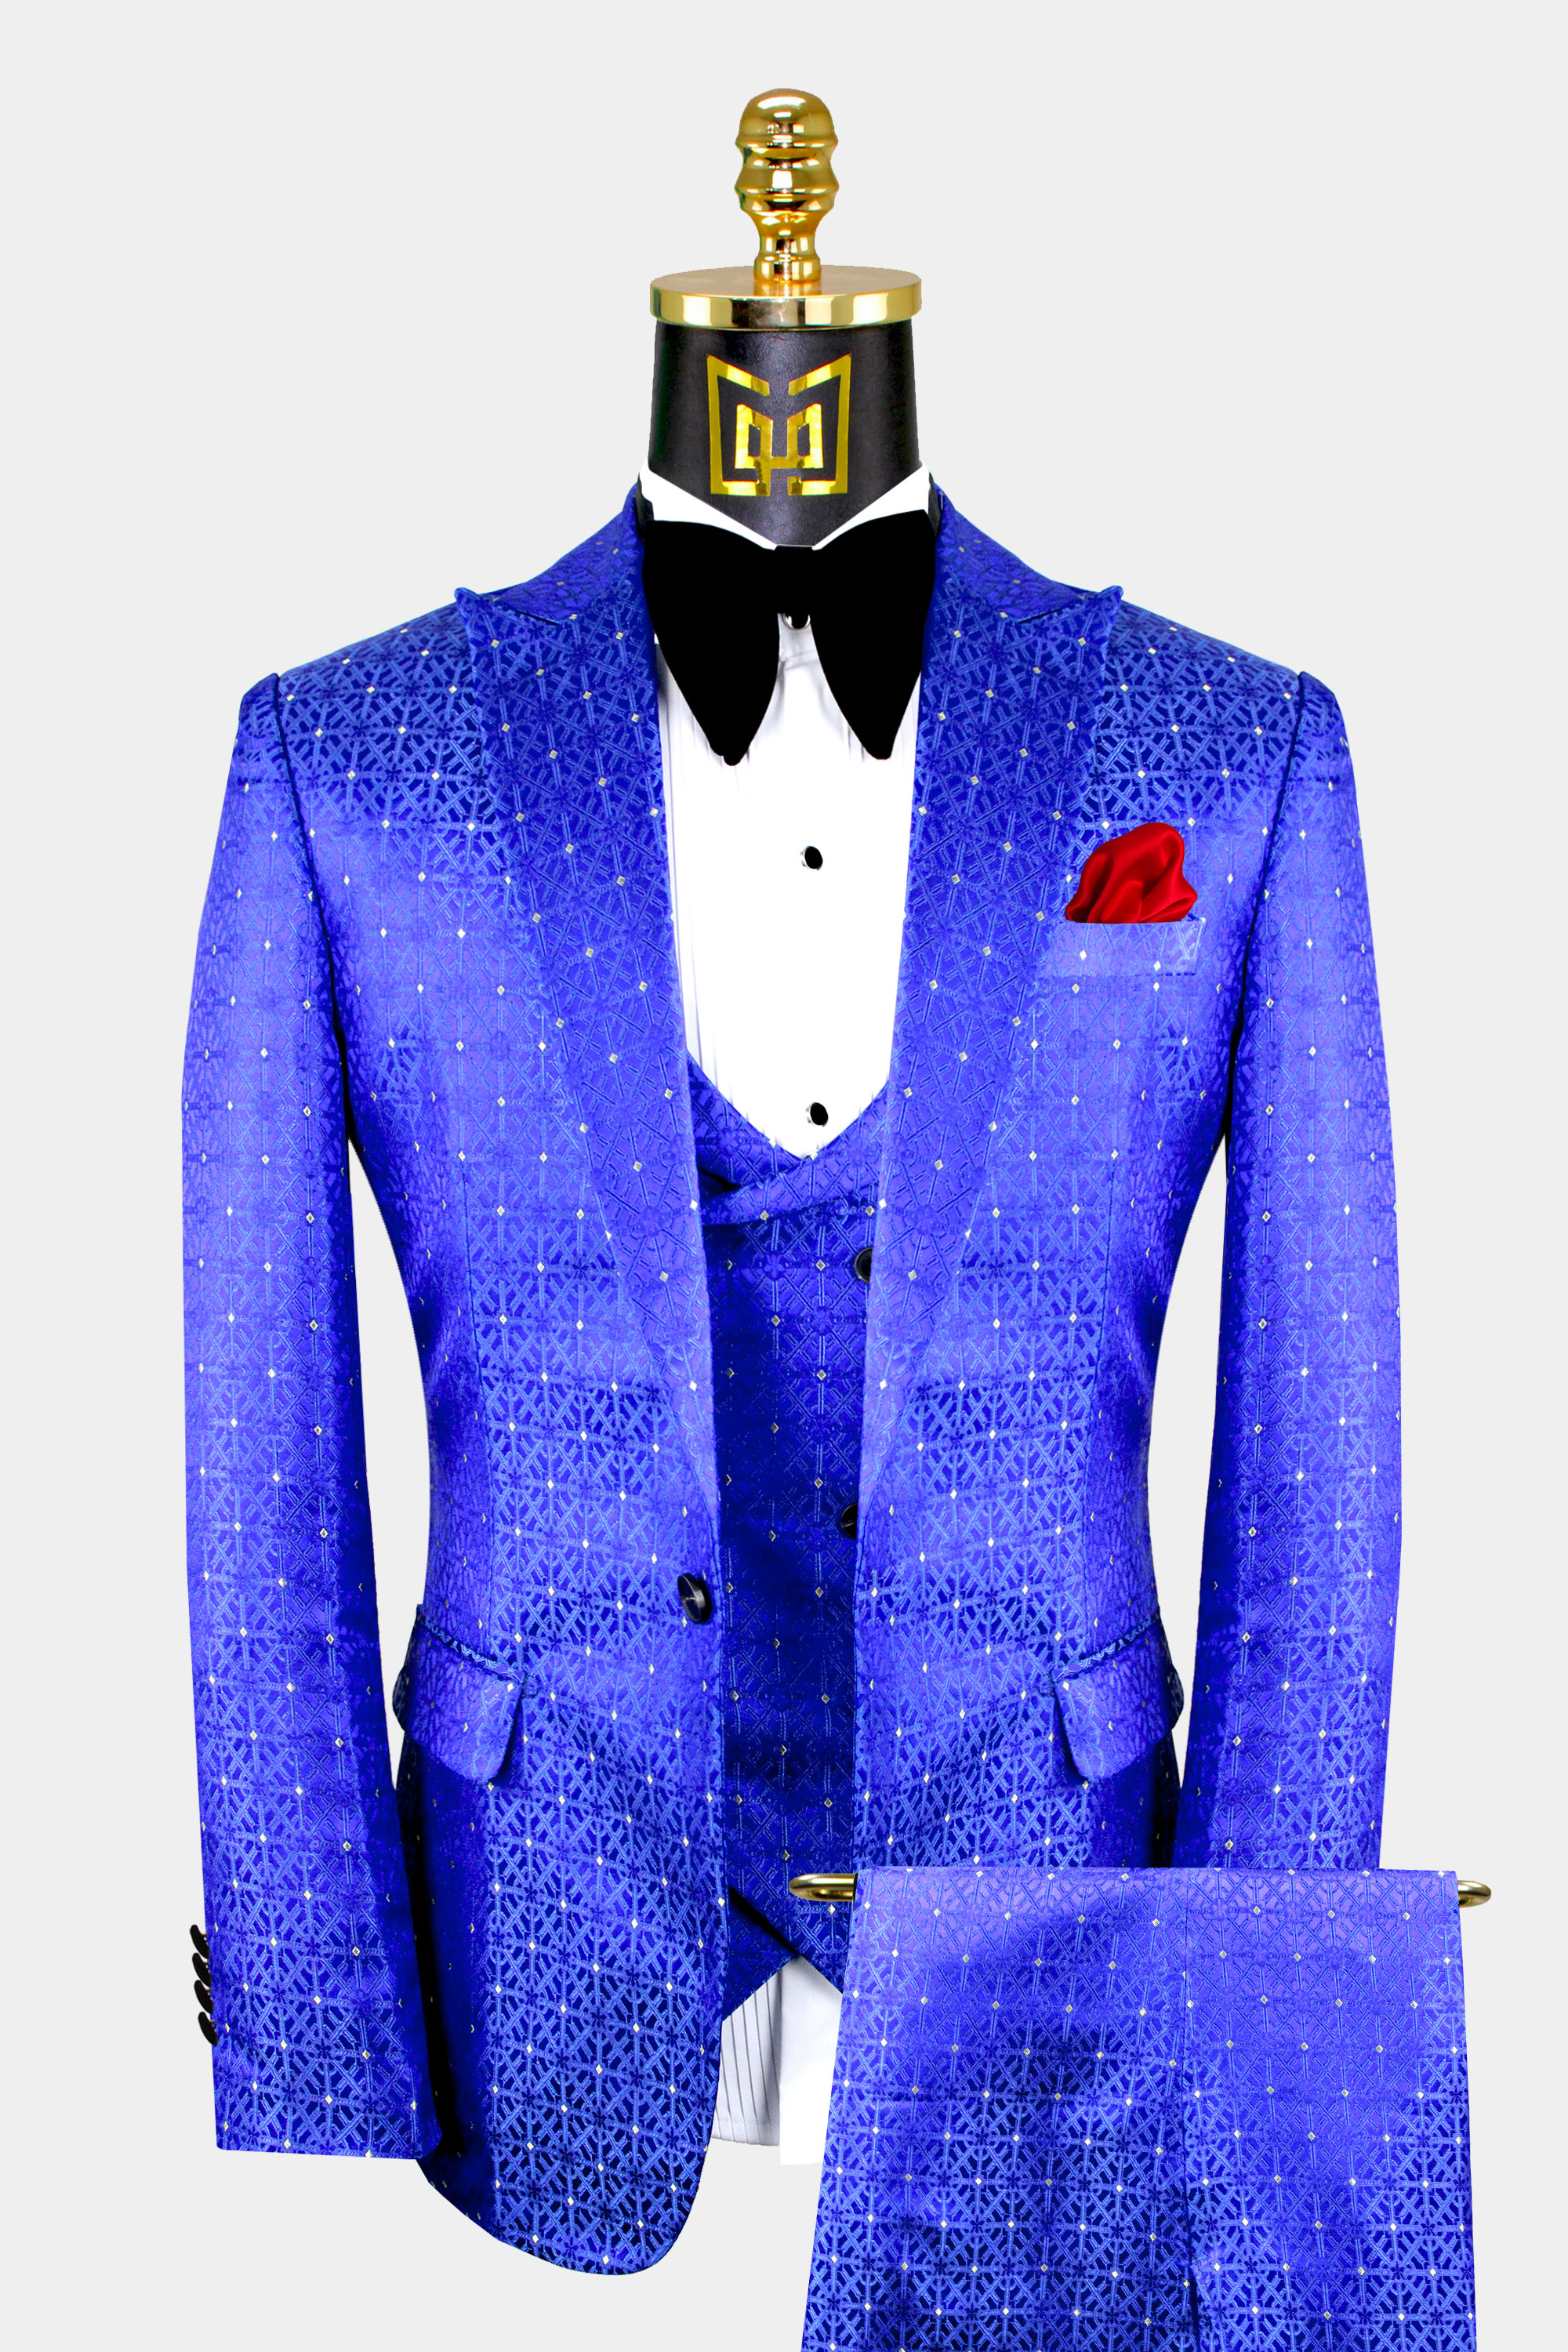 Navy Blue Men's Check 3 Piece Best Men Suit Notch Lapel Formal Wedding Prom Suit 